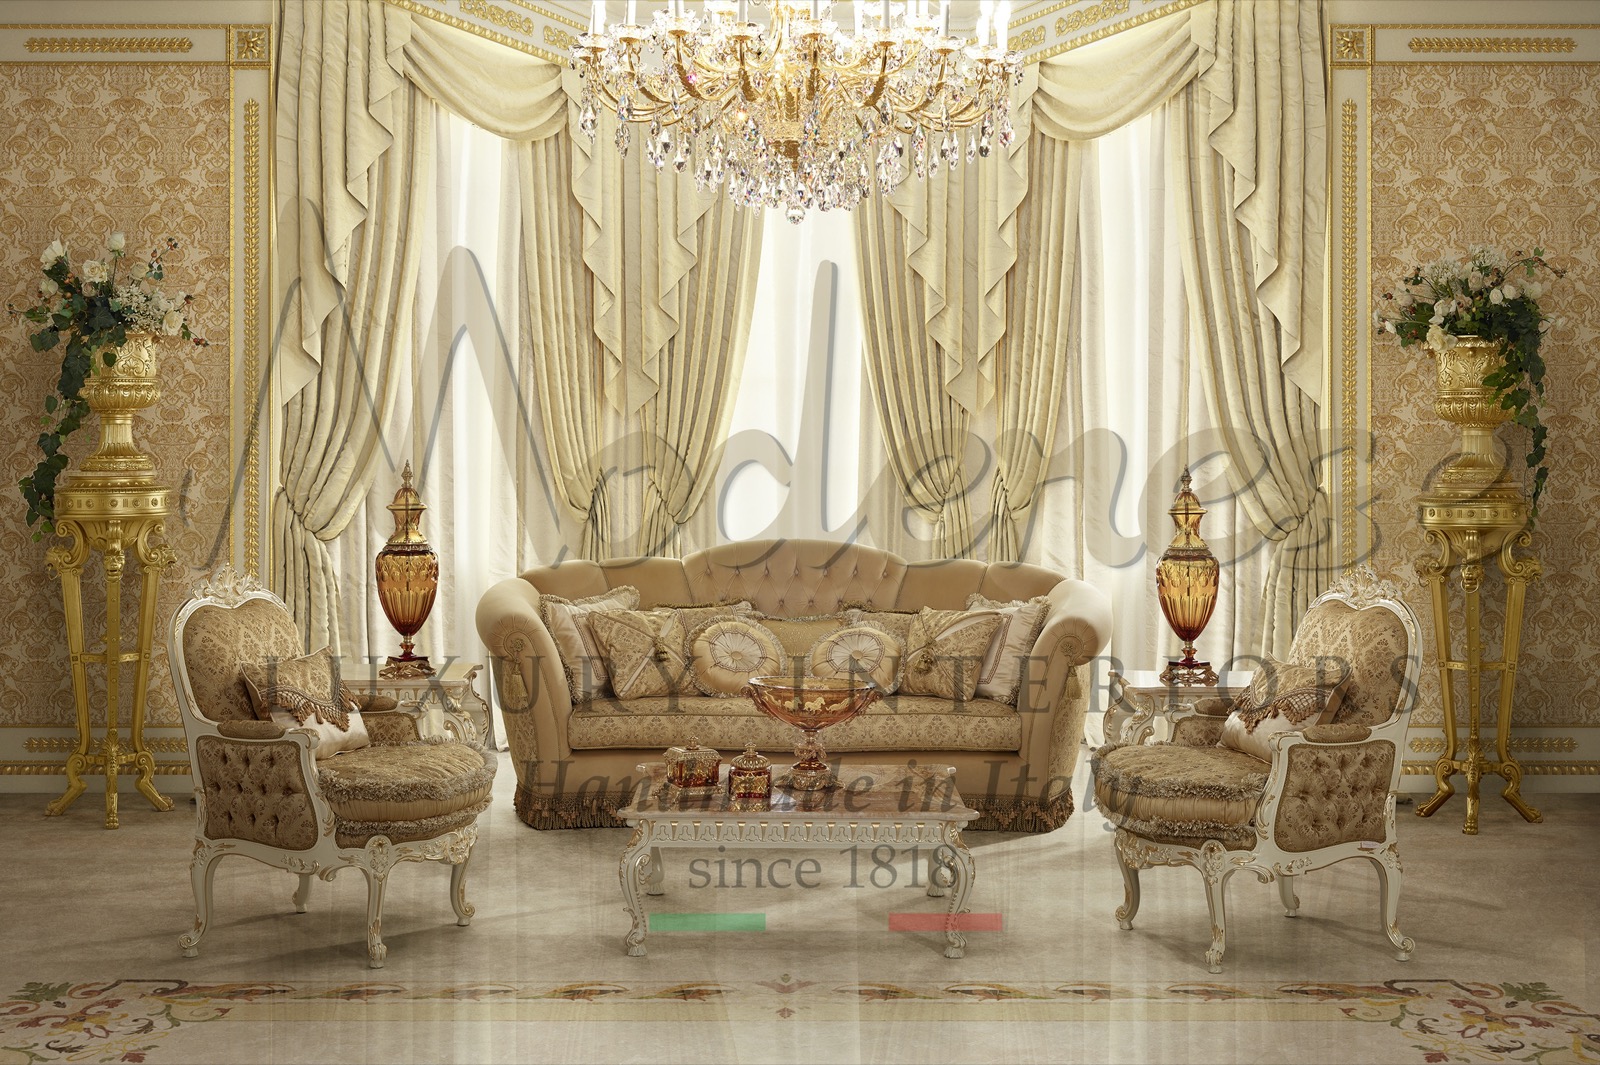 meubles de luxe sur mesure fabriqués à la main en Italie, style royal, goût italien, décoration d'intérieur, projets clés en main, villa palace, décoration intérieure